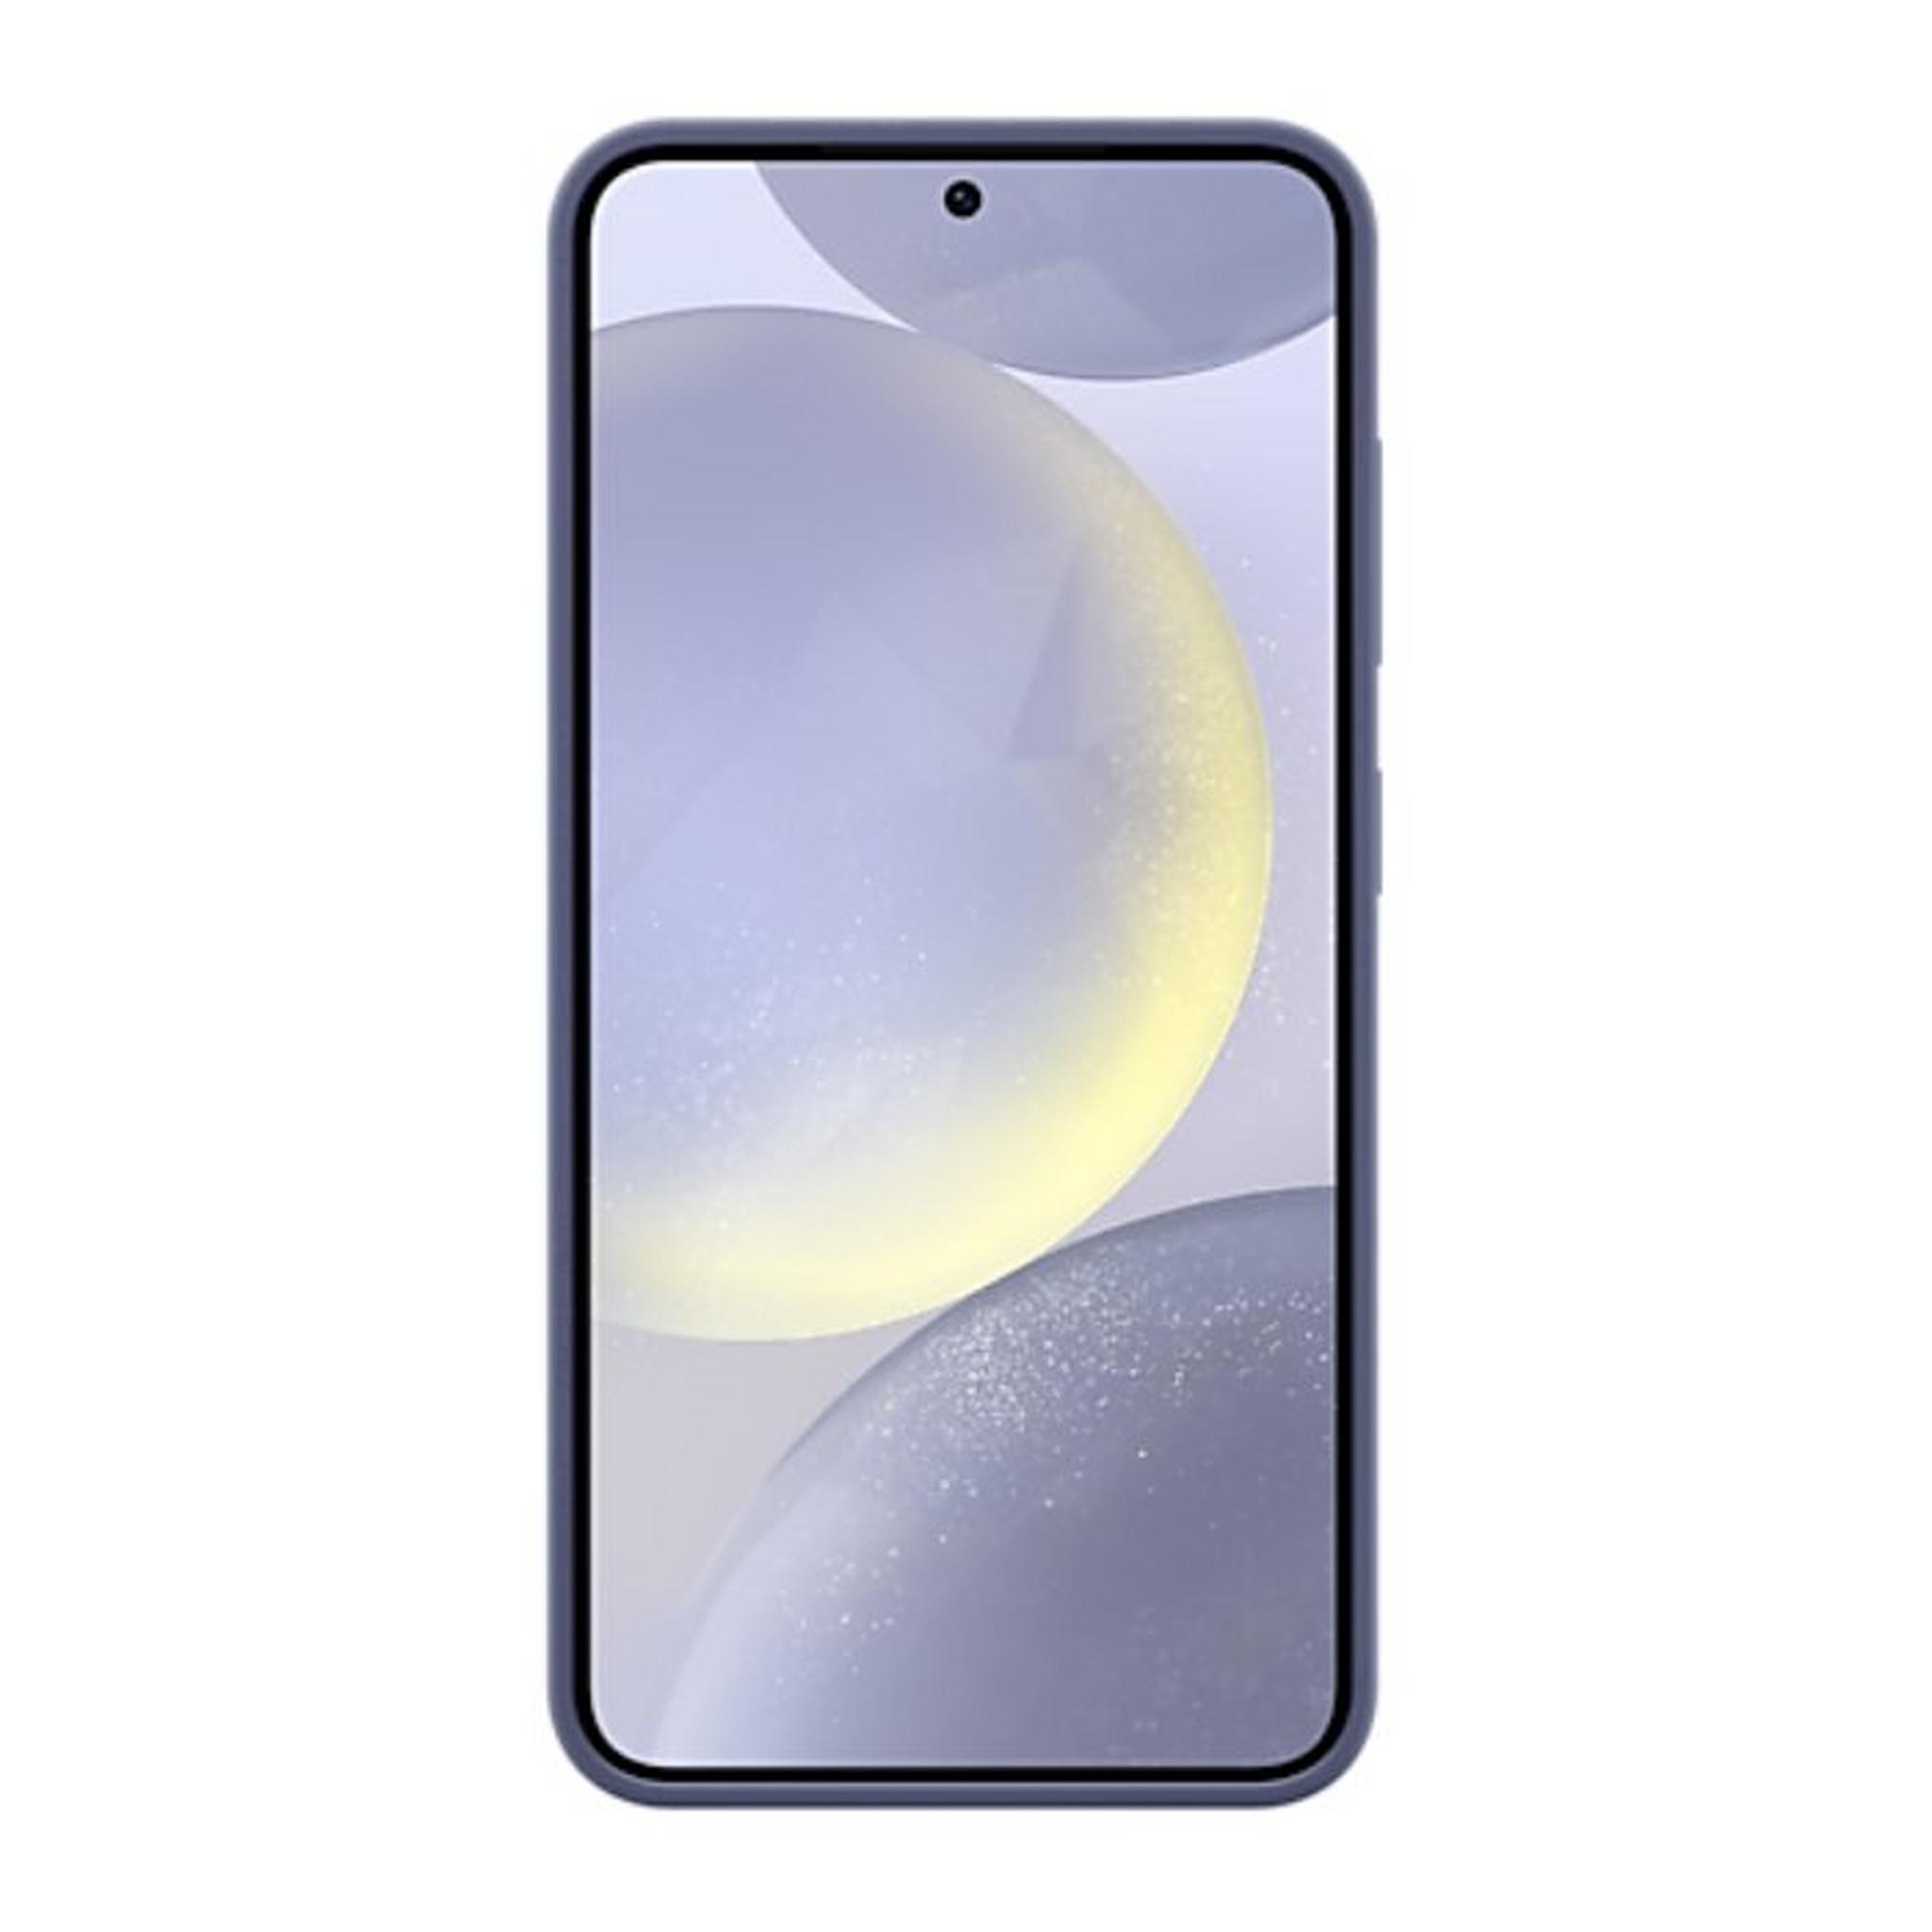 Samsung Galaxy S24 Plus Silicone Case, EF-PS926TVEGWW – Violet